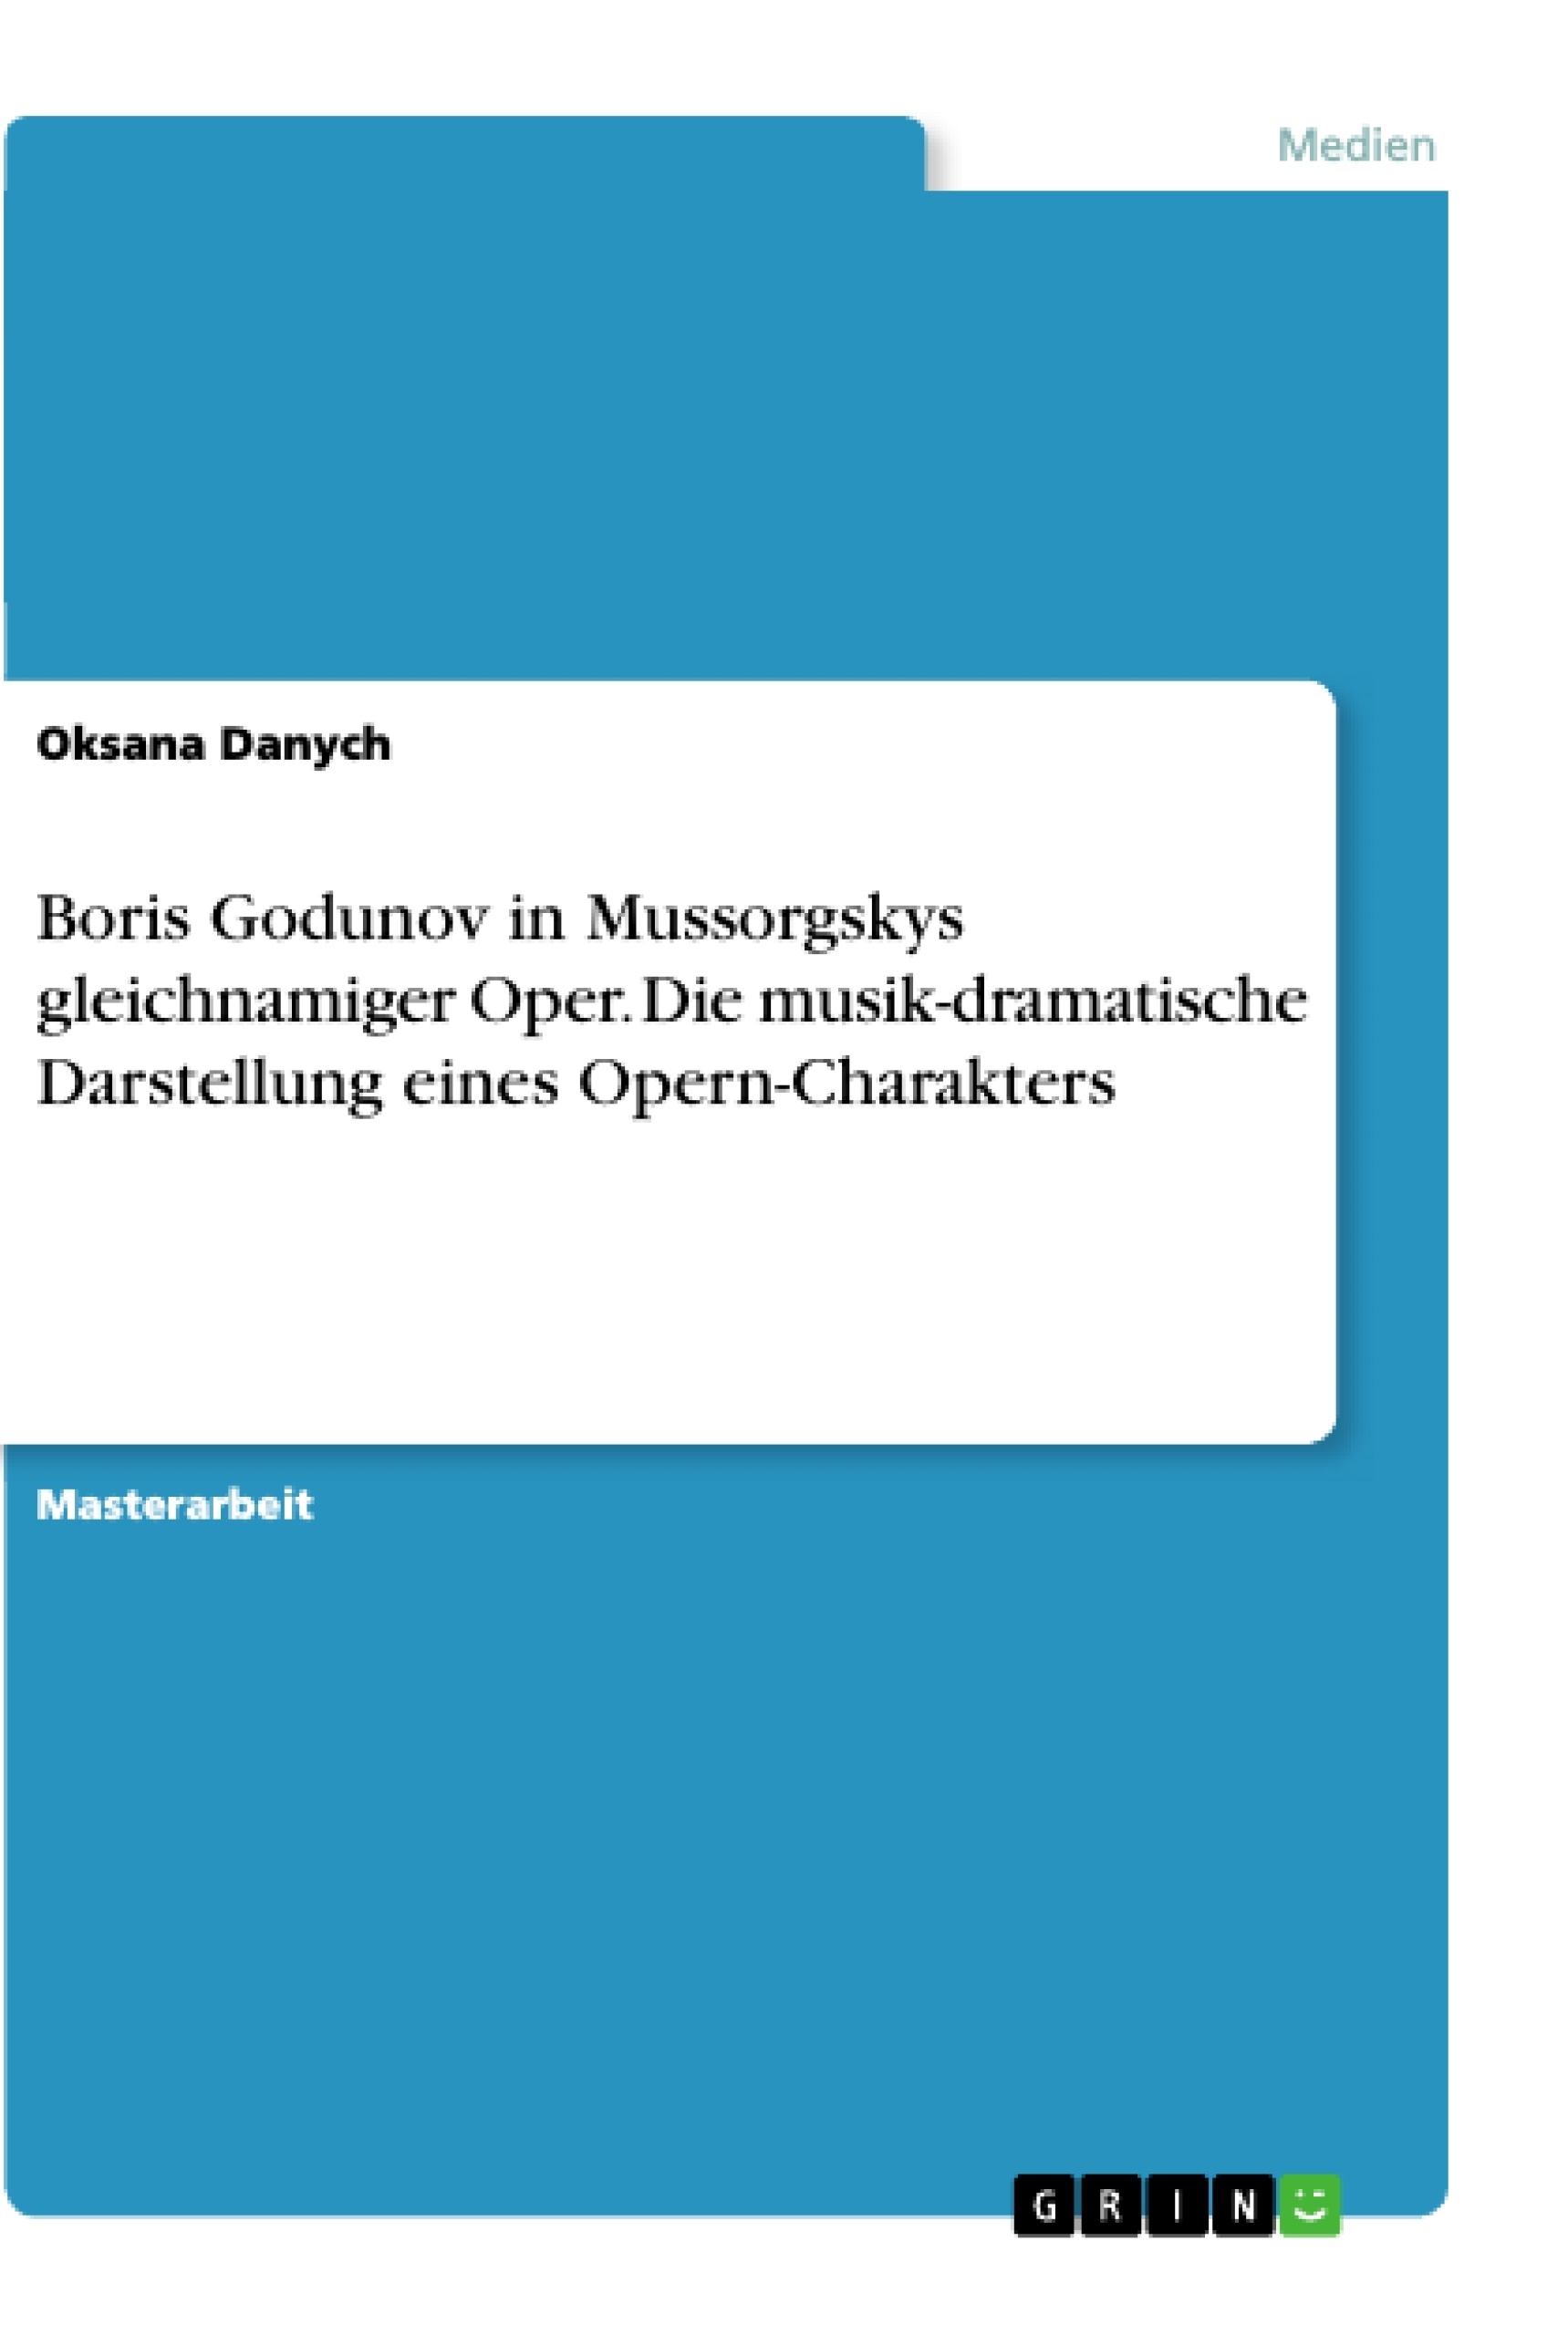 Titre: Boris Godunov in Mussorgskys gleichnamiger Oper. Die musik-dramatische Darstellung eines Opern-Charakters